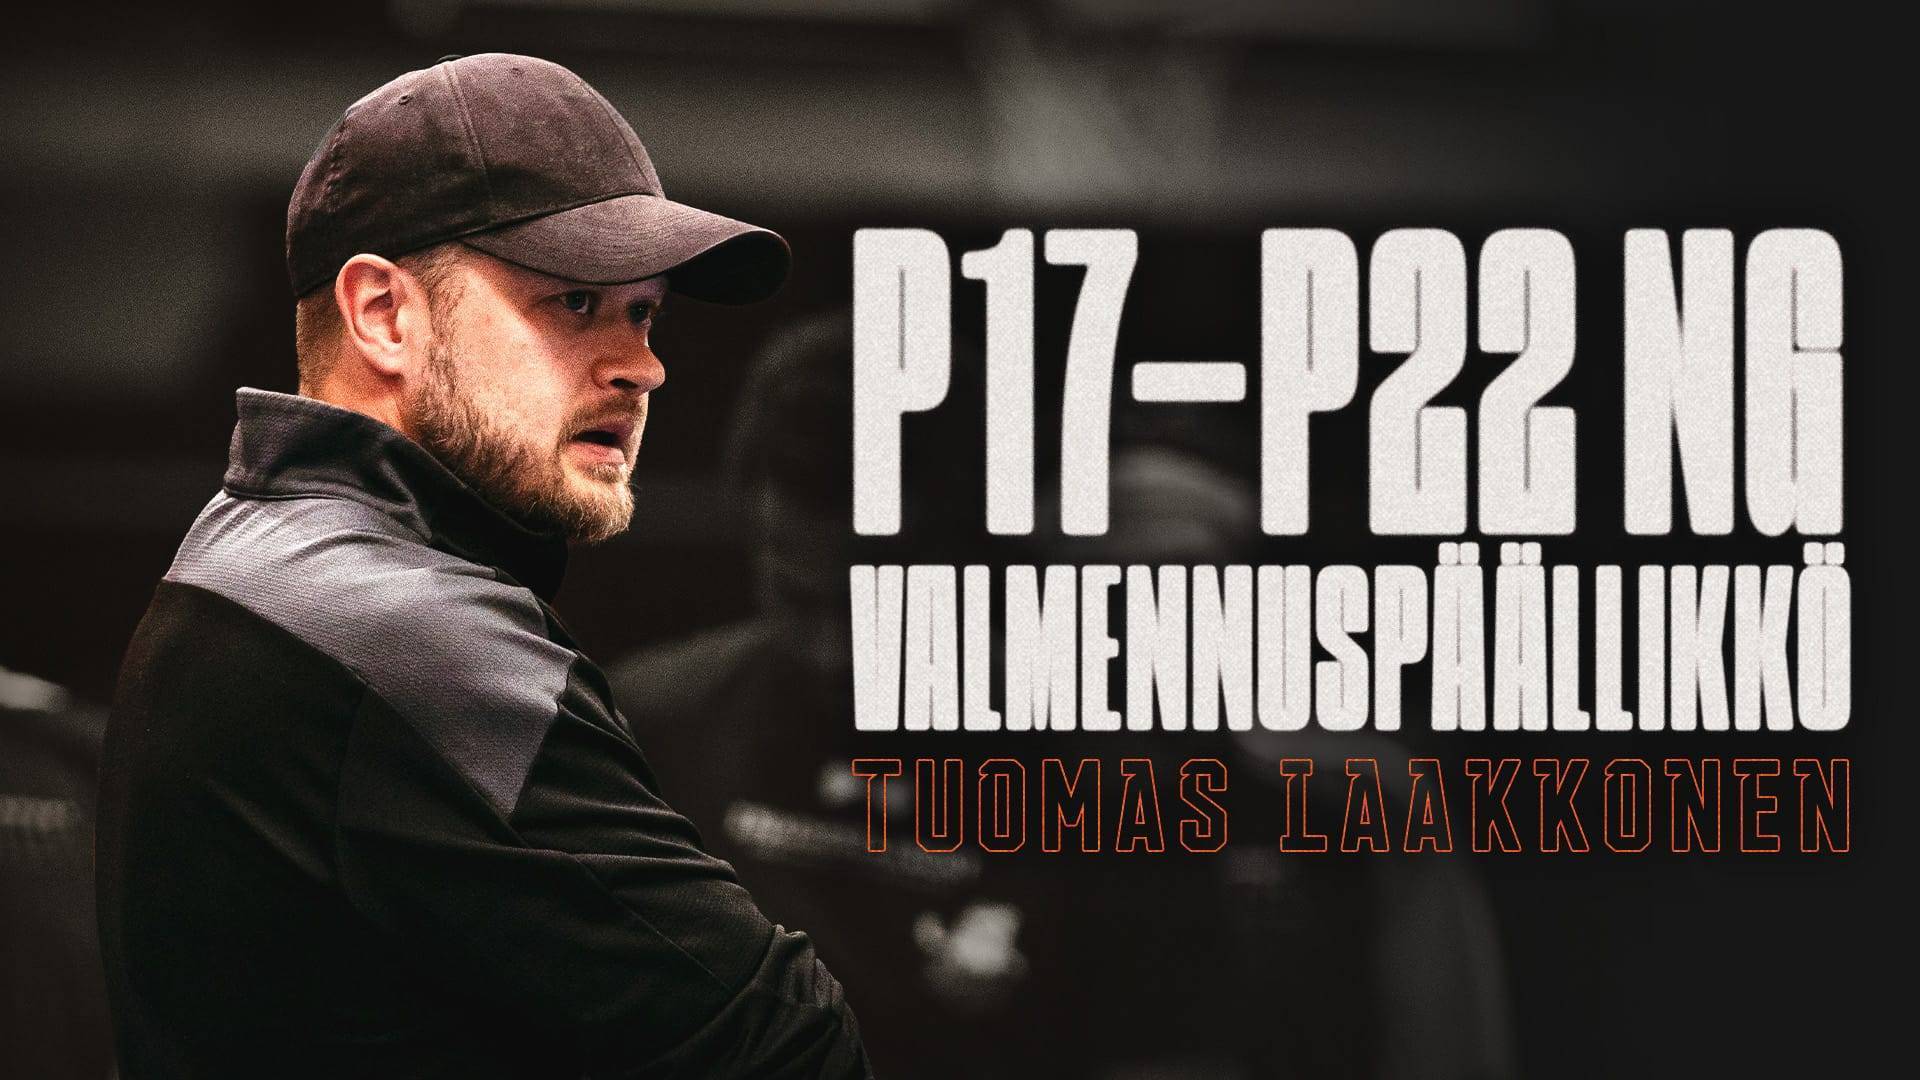 Tuomas Laakkonen P17-22NG valmennuspäälliköksi!